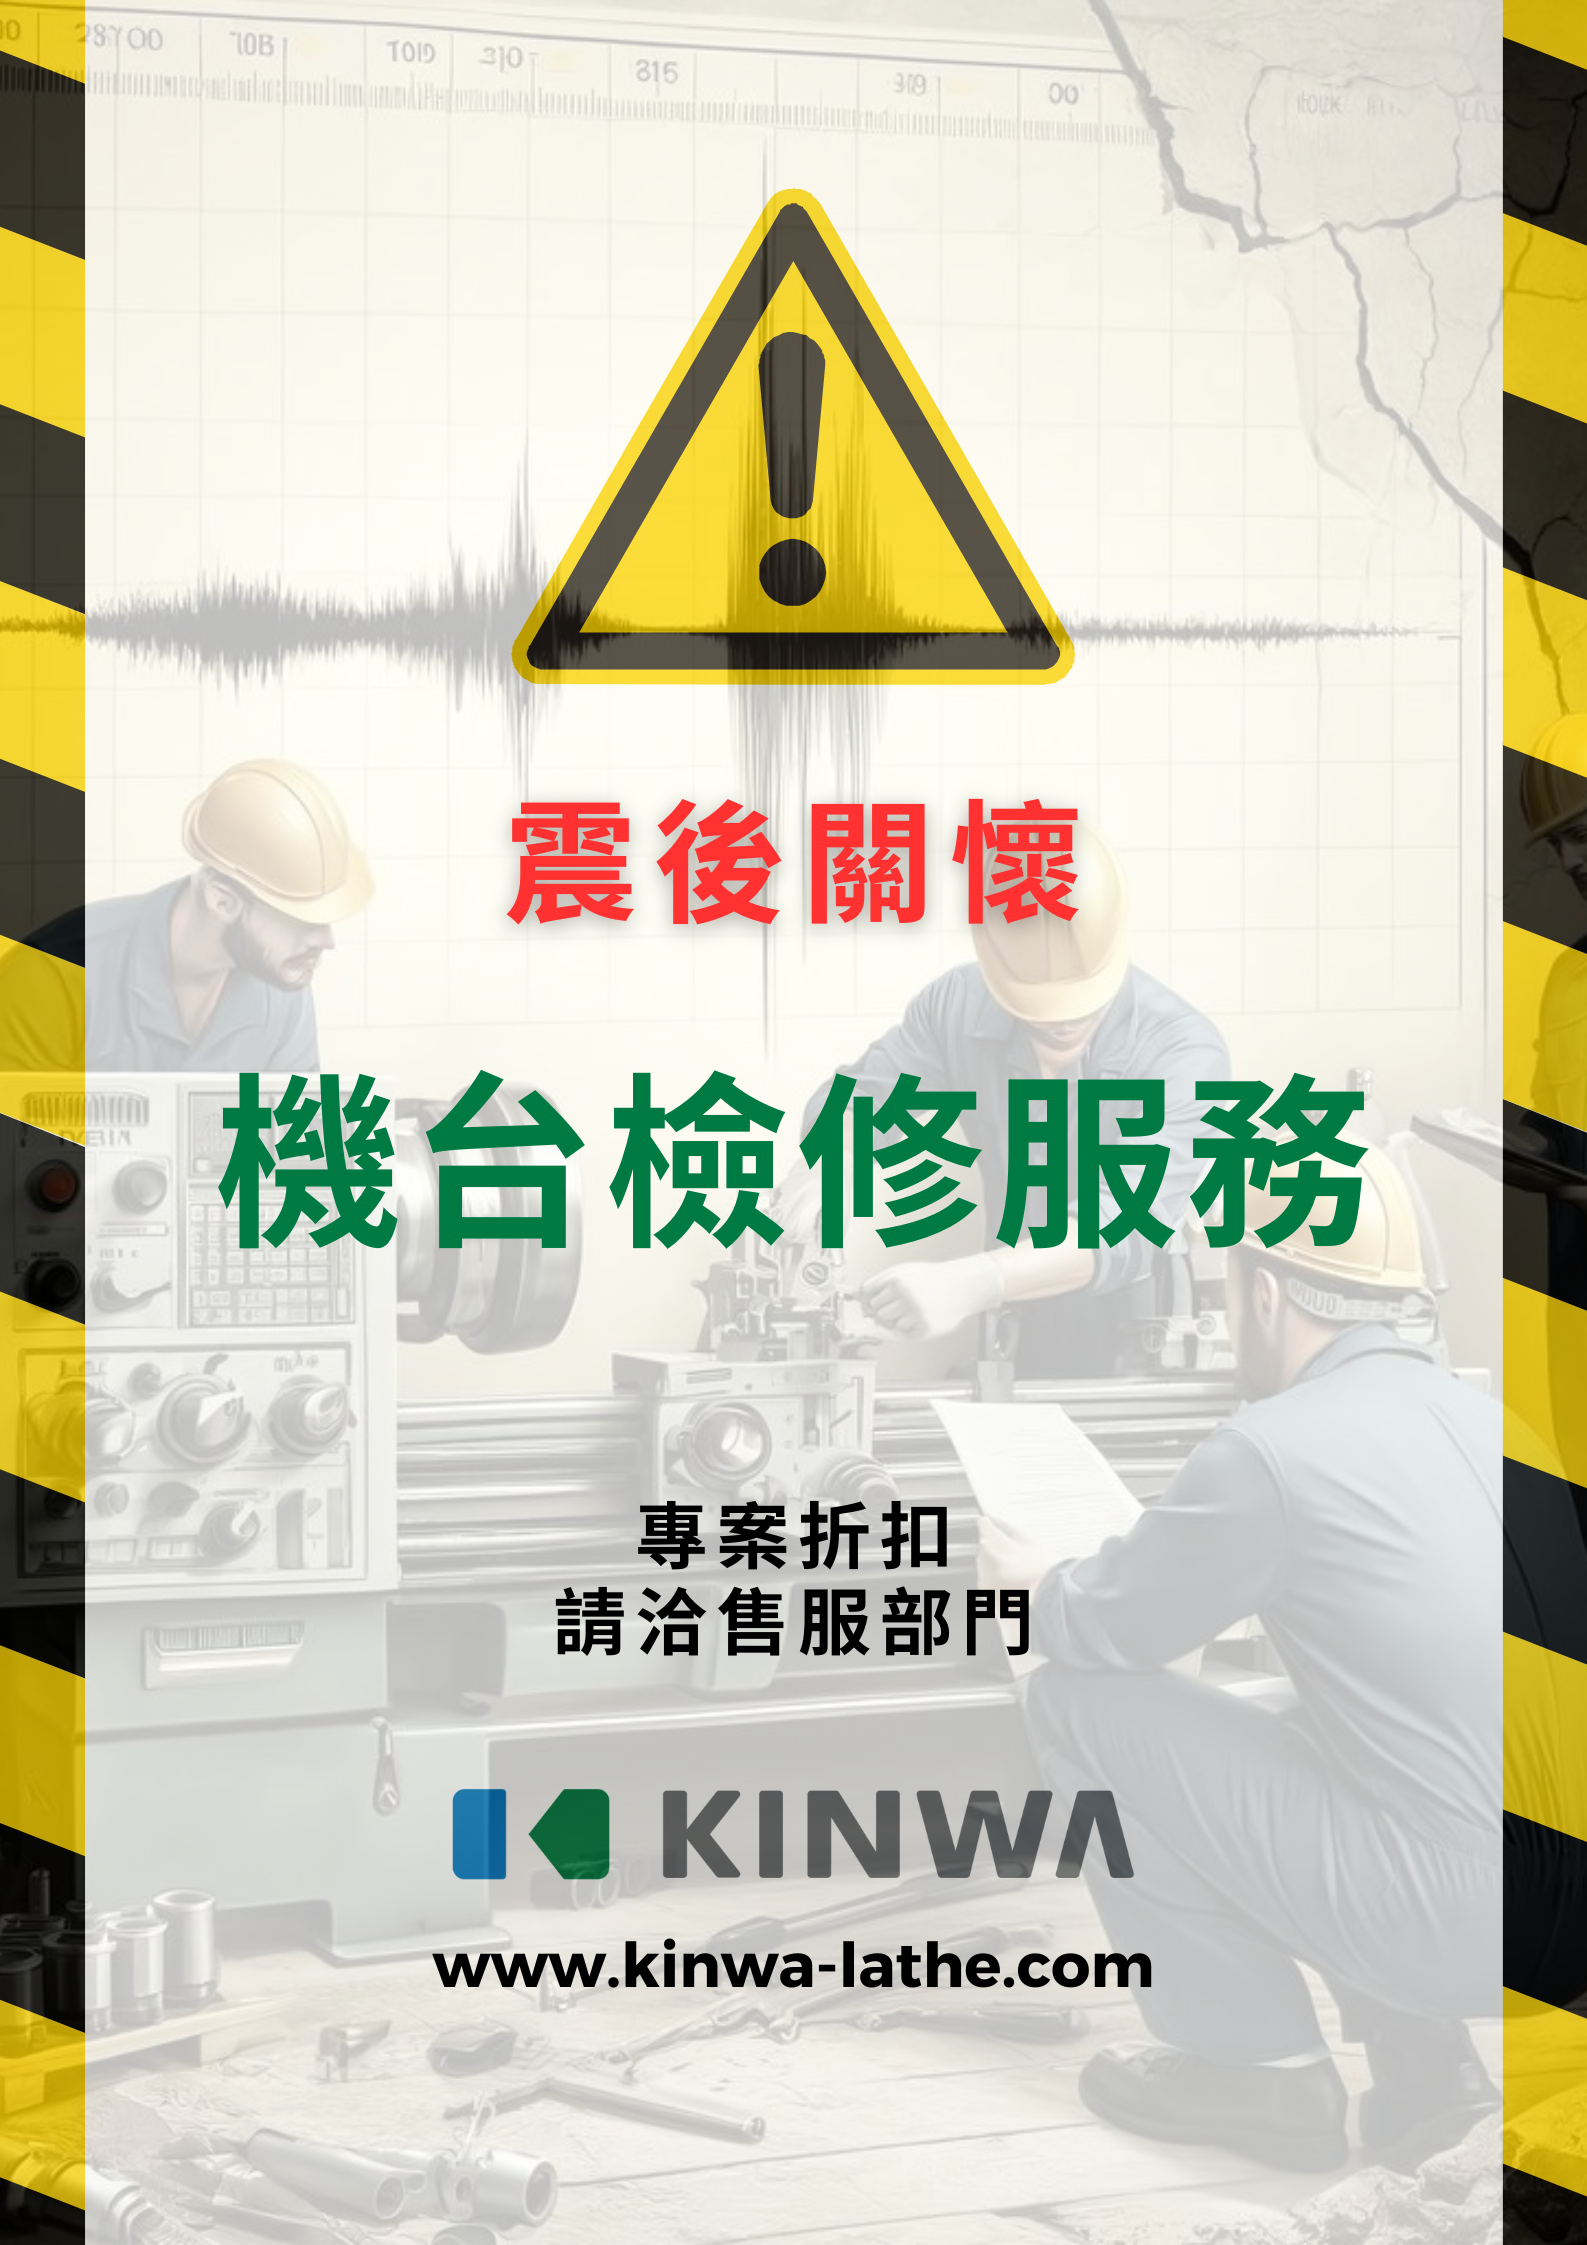 【重要通知】全台灣有感地震後，您的車床機台是否安全？我們提供專業檢查與特惠支援服務